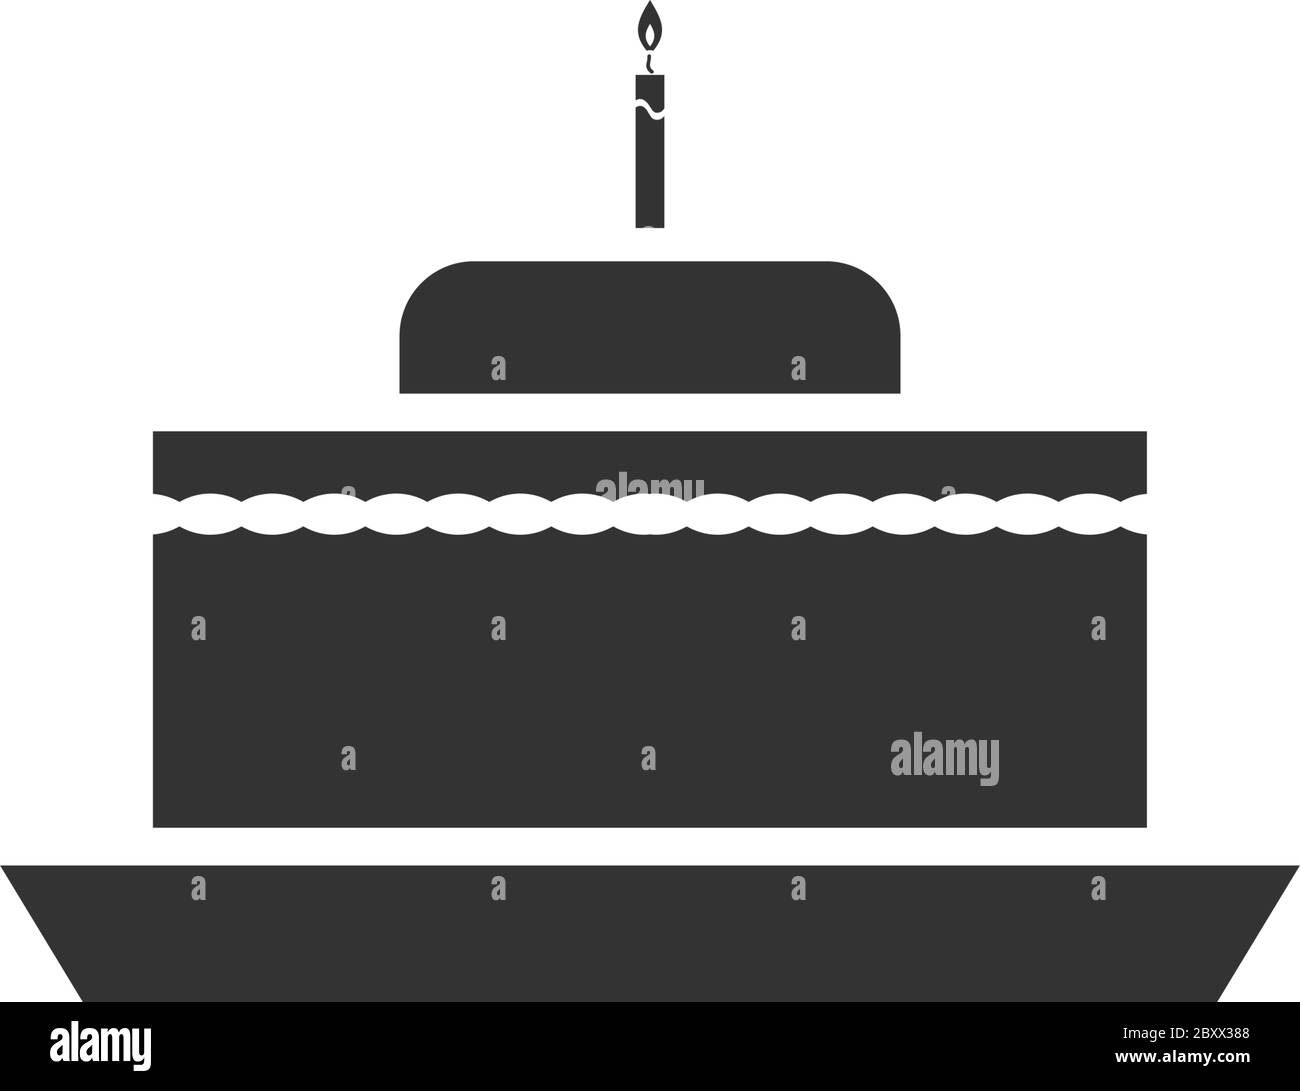 Geburtstagskuchen. Schwarzes Symbol flach auf weißem Hintergrund Stock Vektor